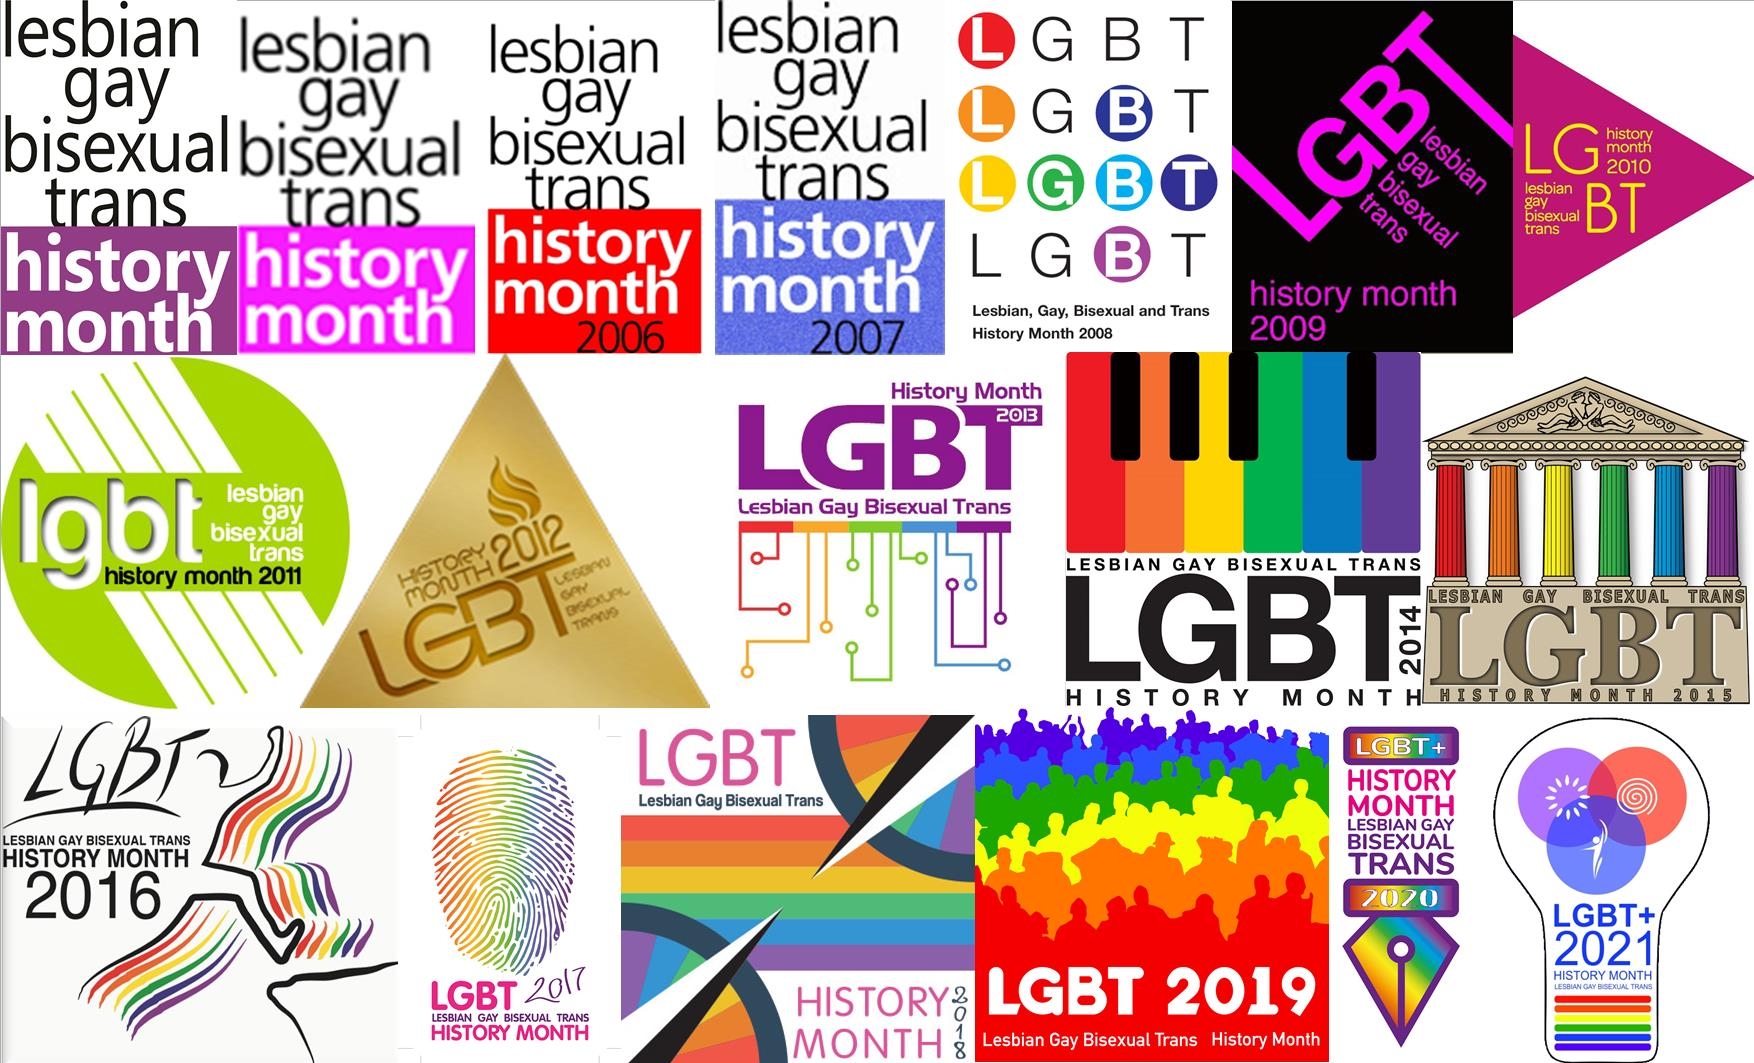 Alan Turing › Lesbian, Gay, Bisexual, Transgender & Intersex News